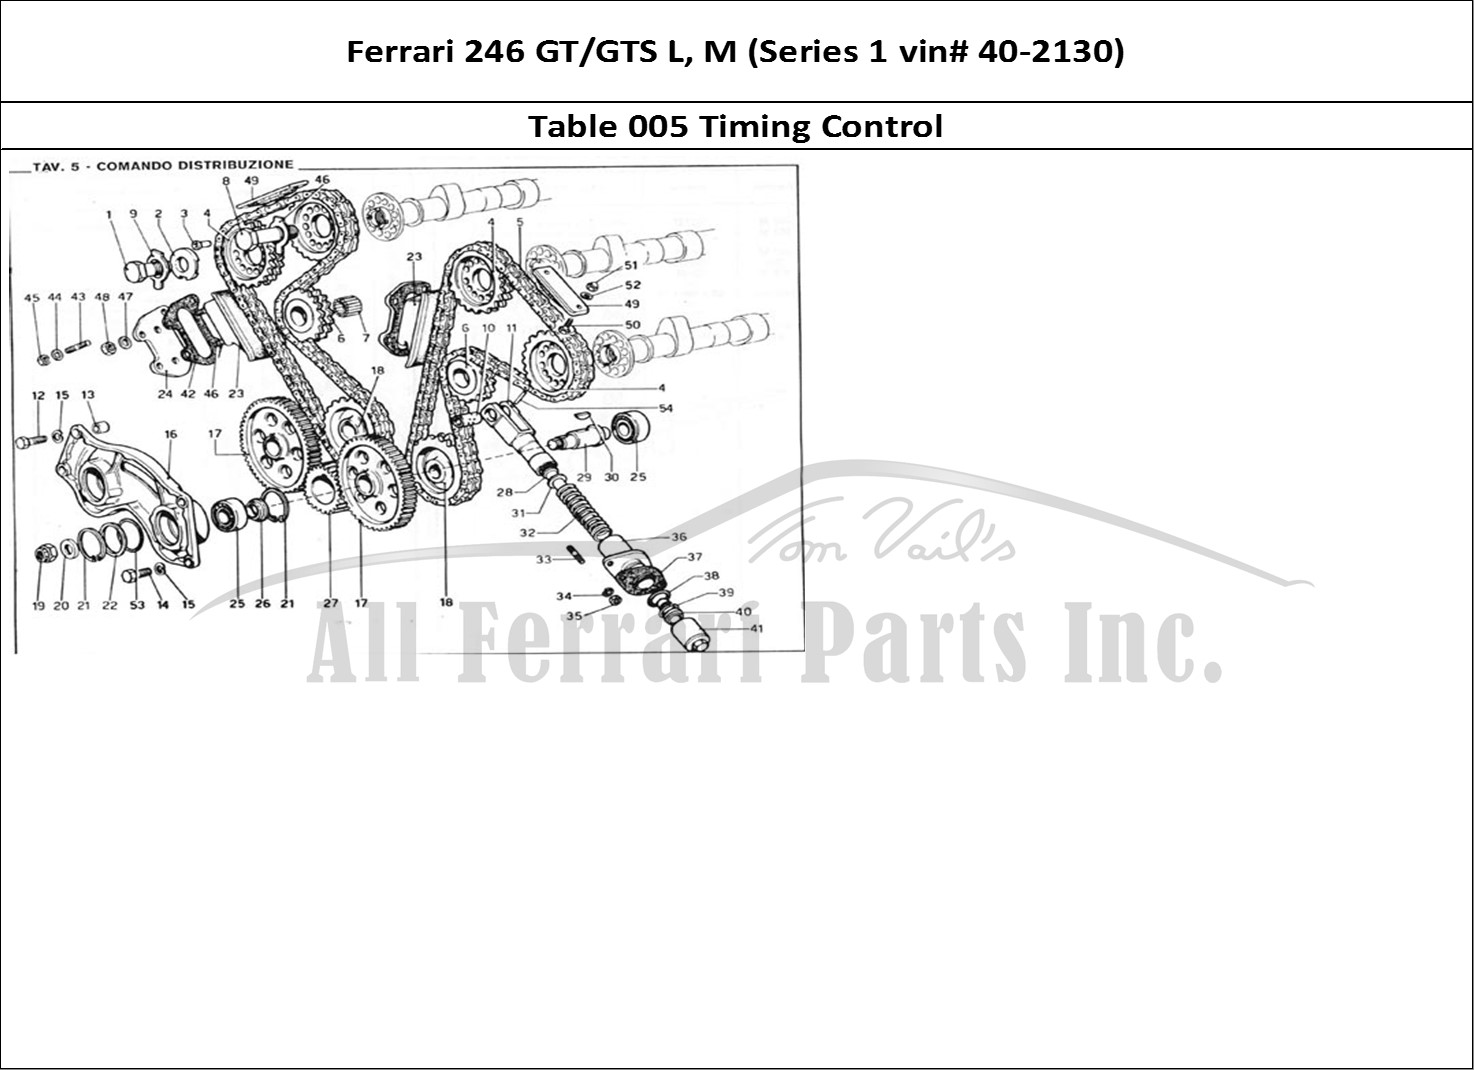 Ferrari Parts Ferrari 246 GT Series 1 Page 005 Timing Control